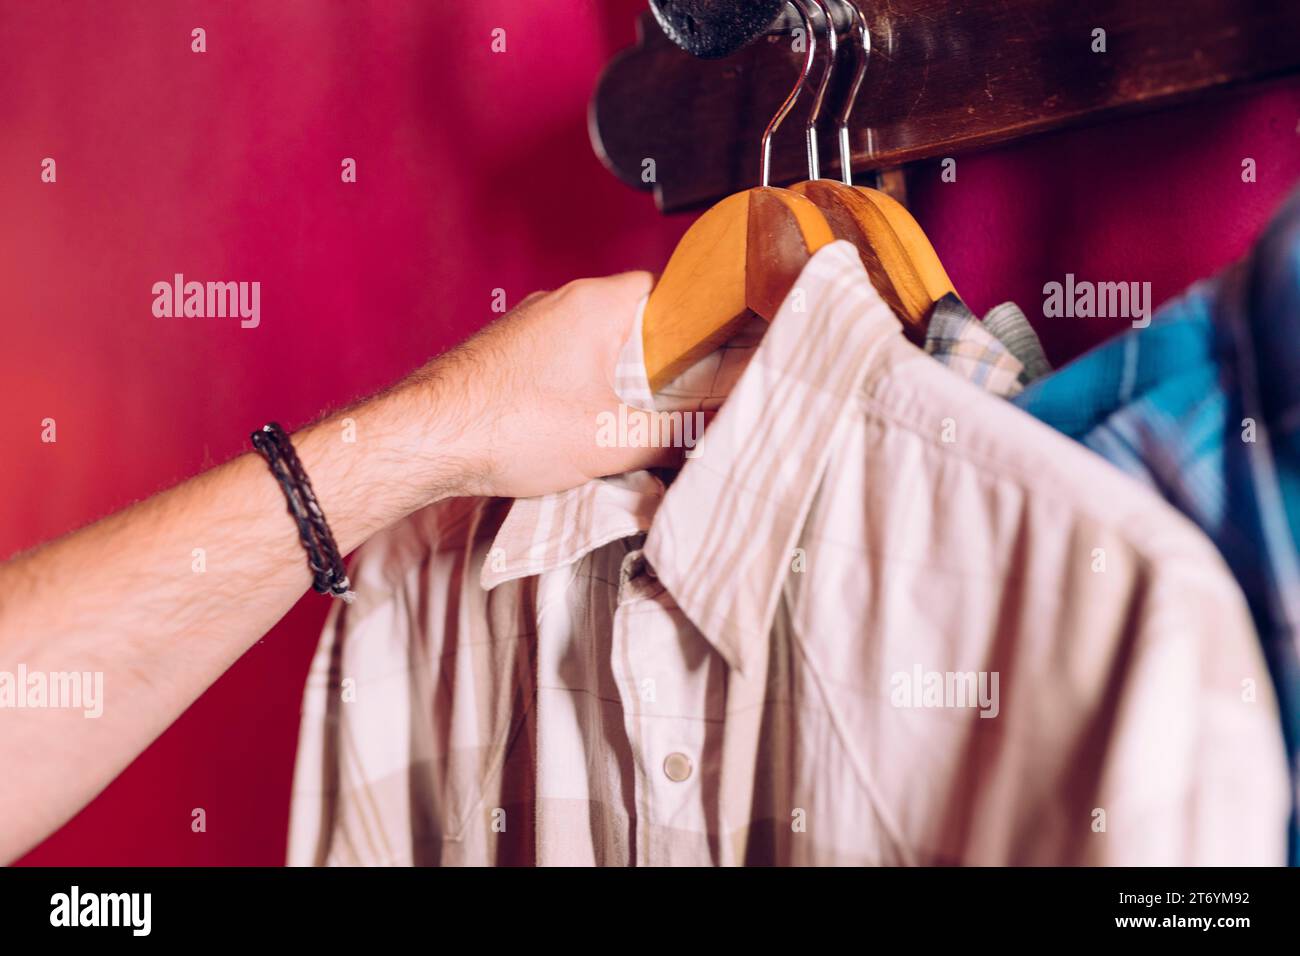 Die Hand des Mannes nimmt das Hemd des Kleiderbügels von der roten Wand Stockfoto